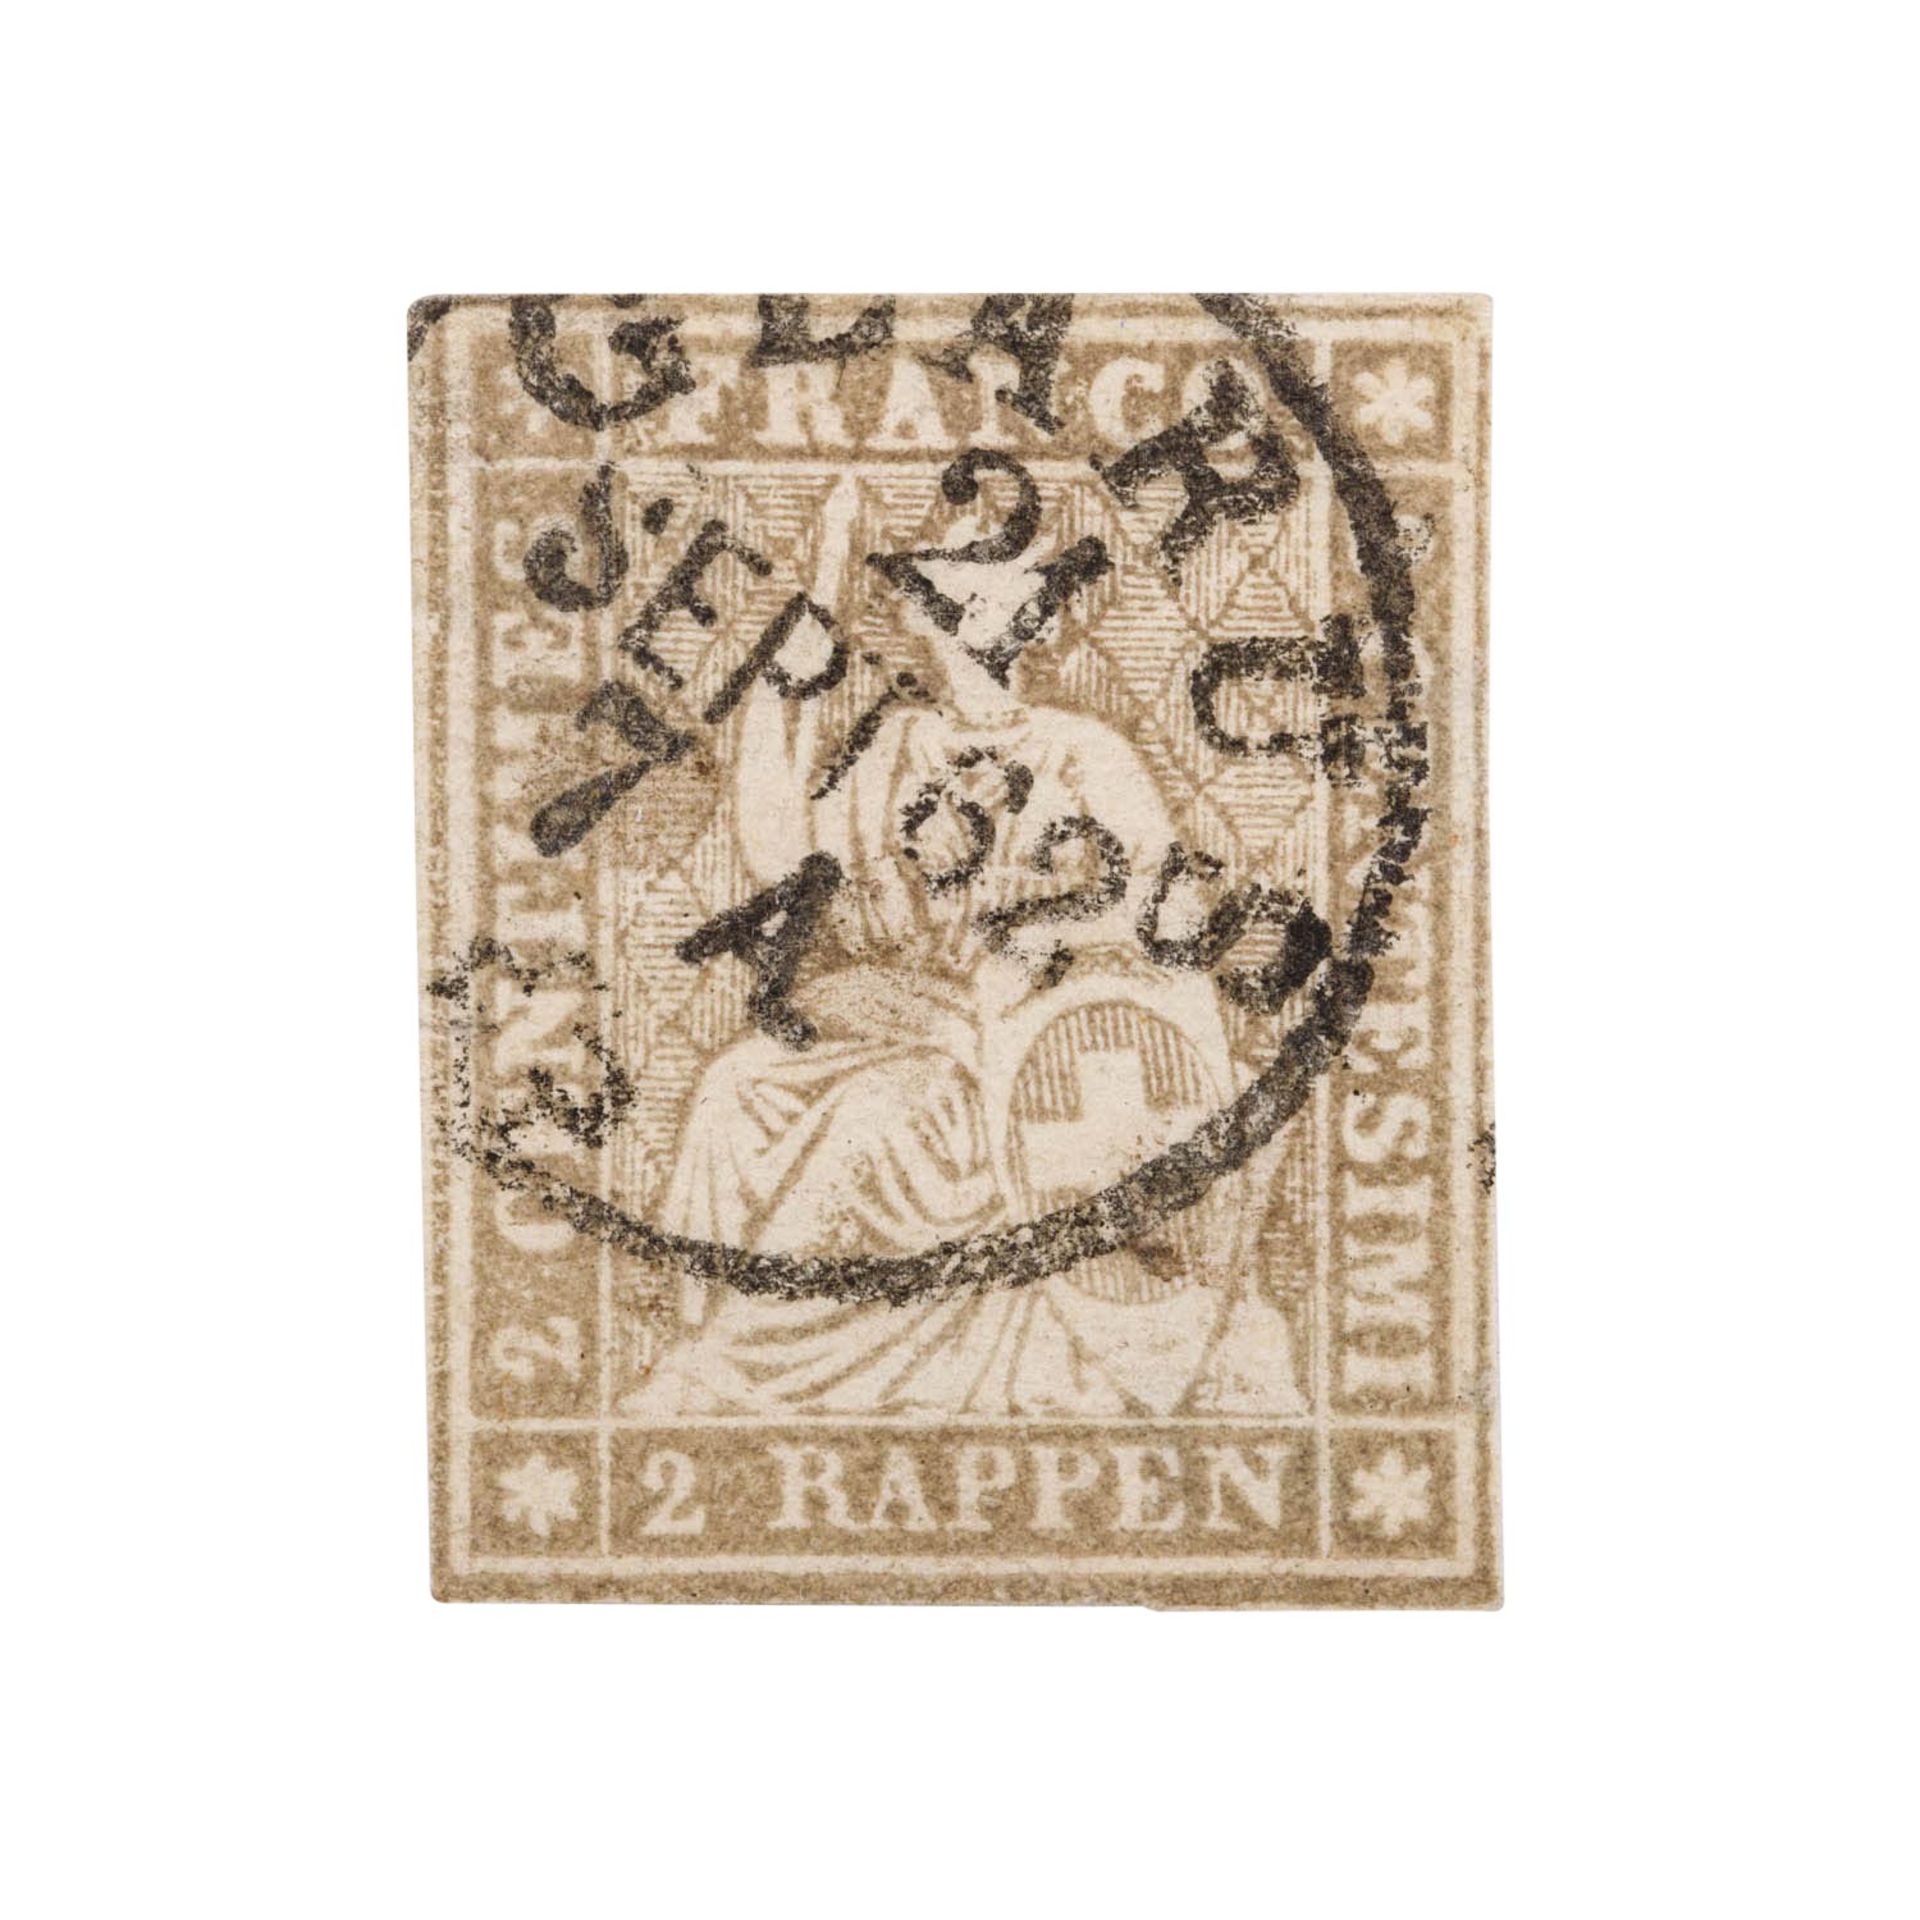 Schweiz - 1862, 2 Rappen grau, sitzende Helvetia, 